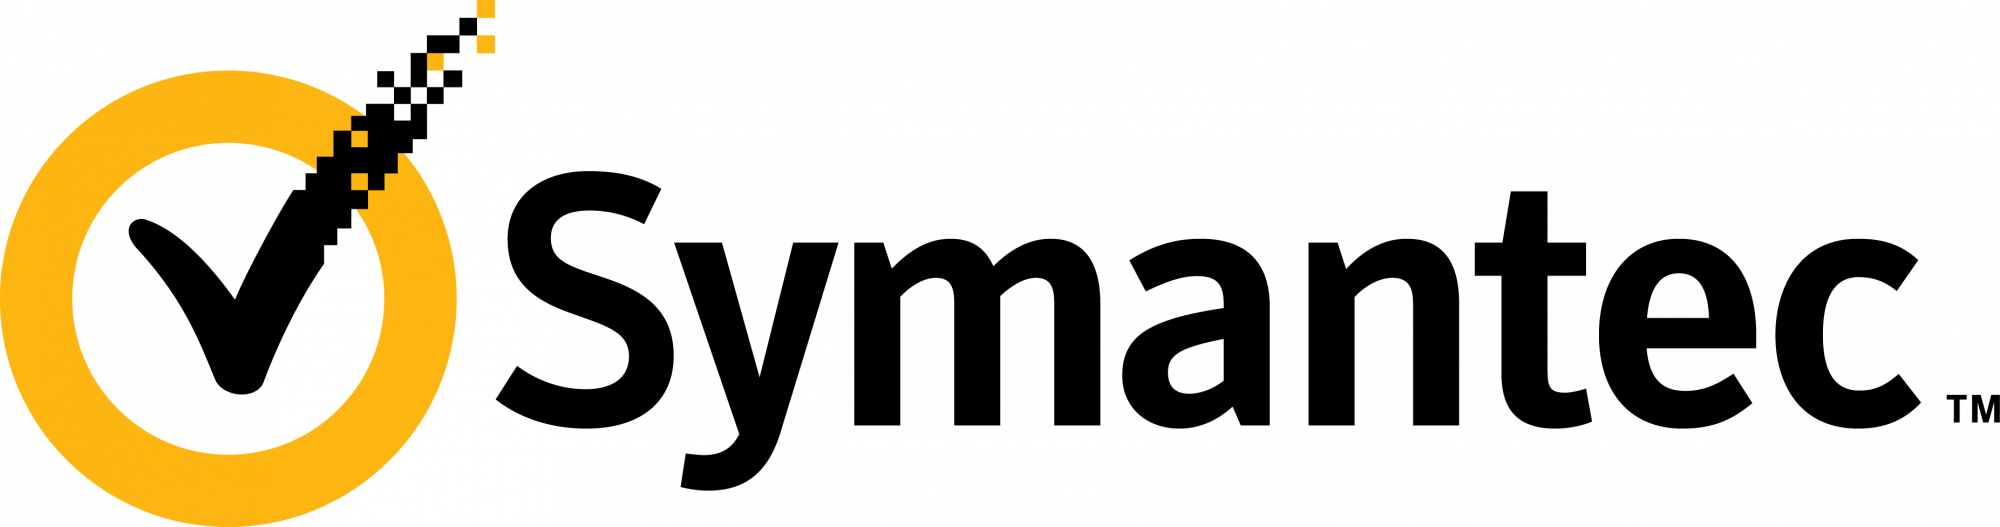 Symantec.png